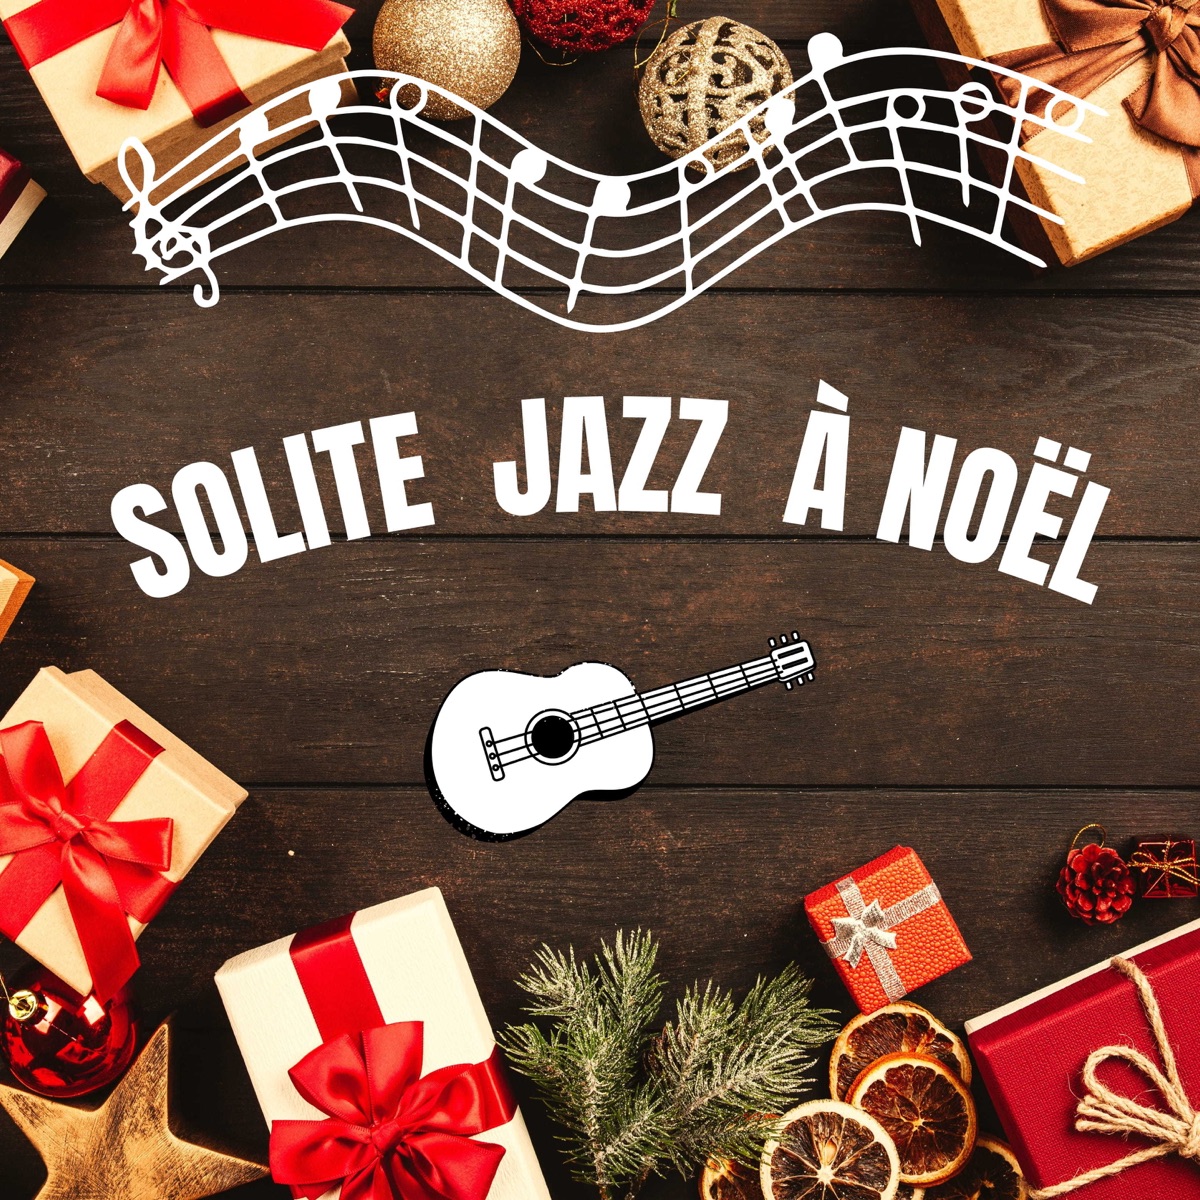 Solite Jazz A Noël